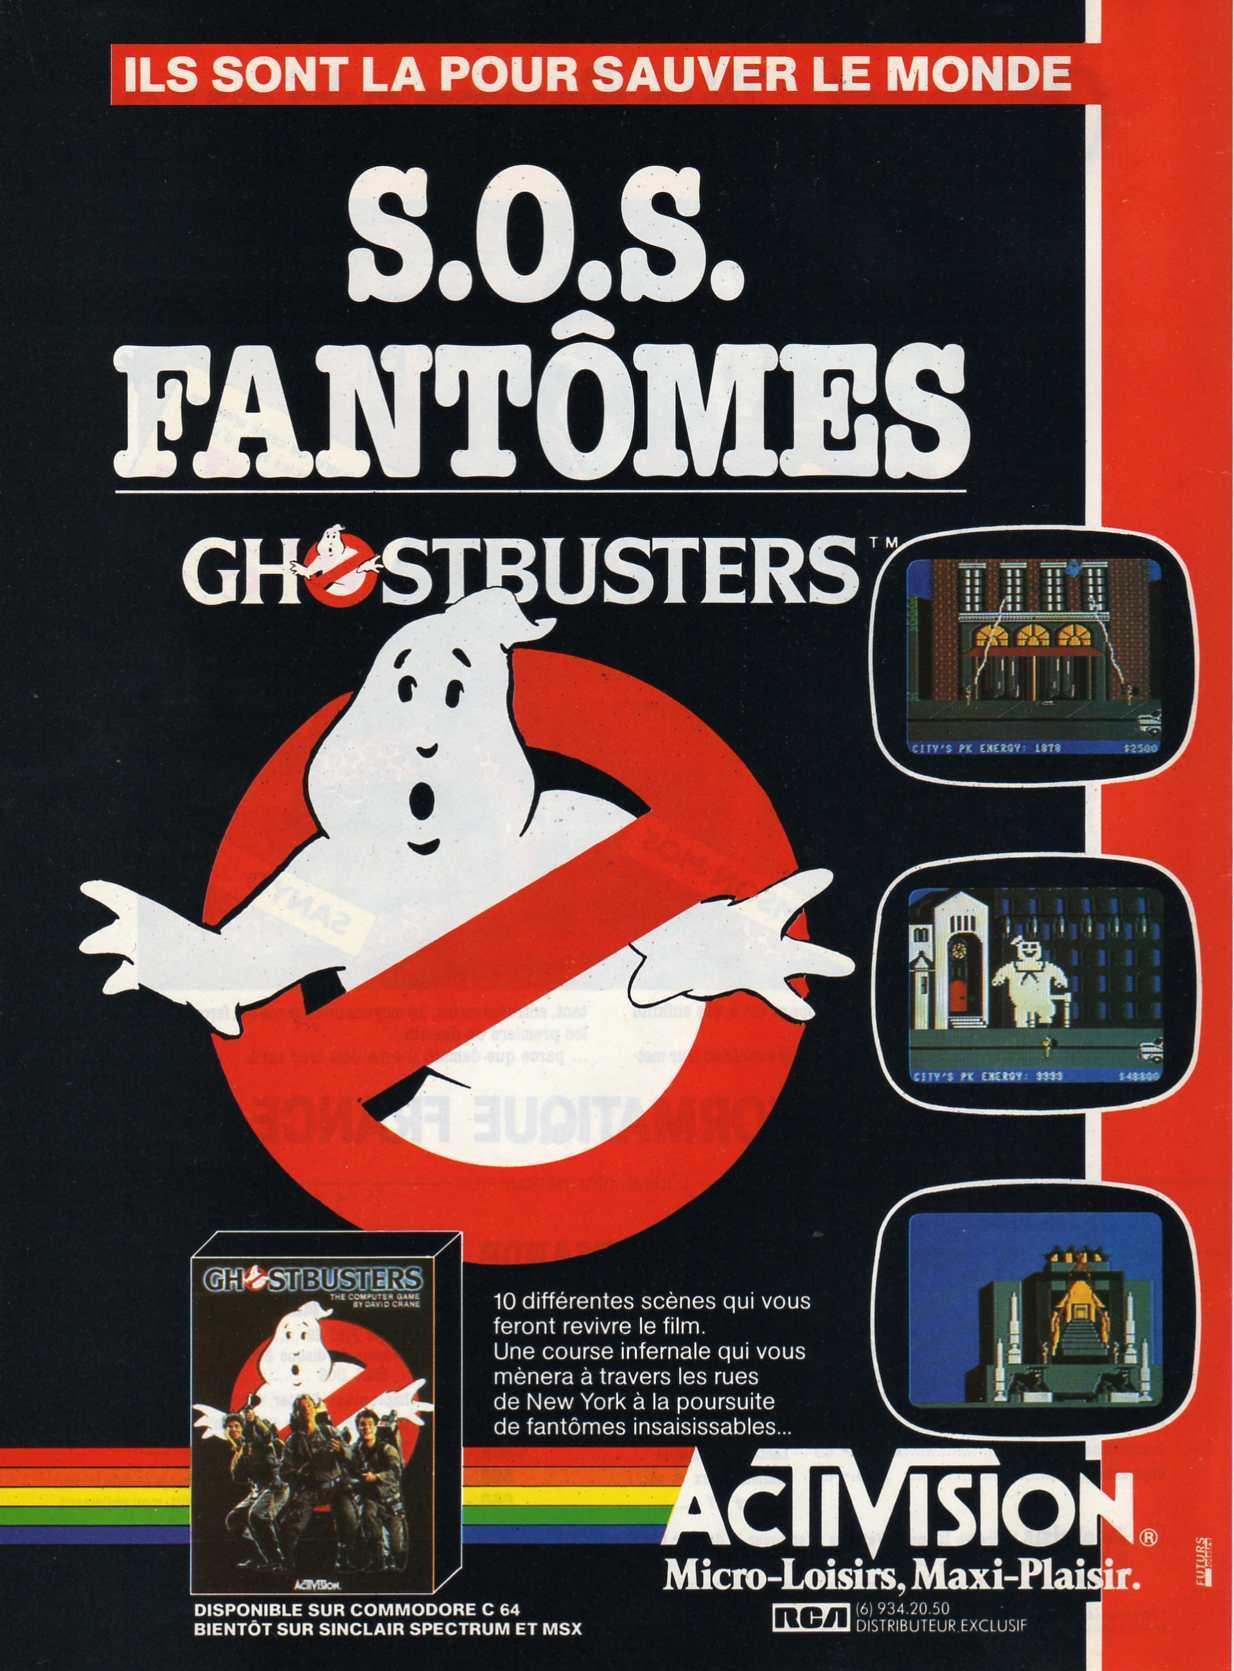 games/ghostbusters/ghostbusters_pub.jpg